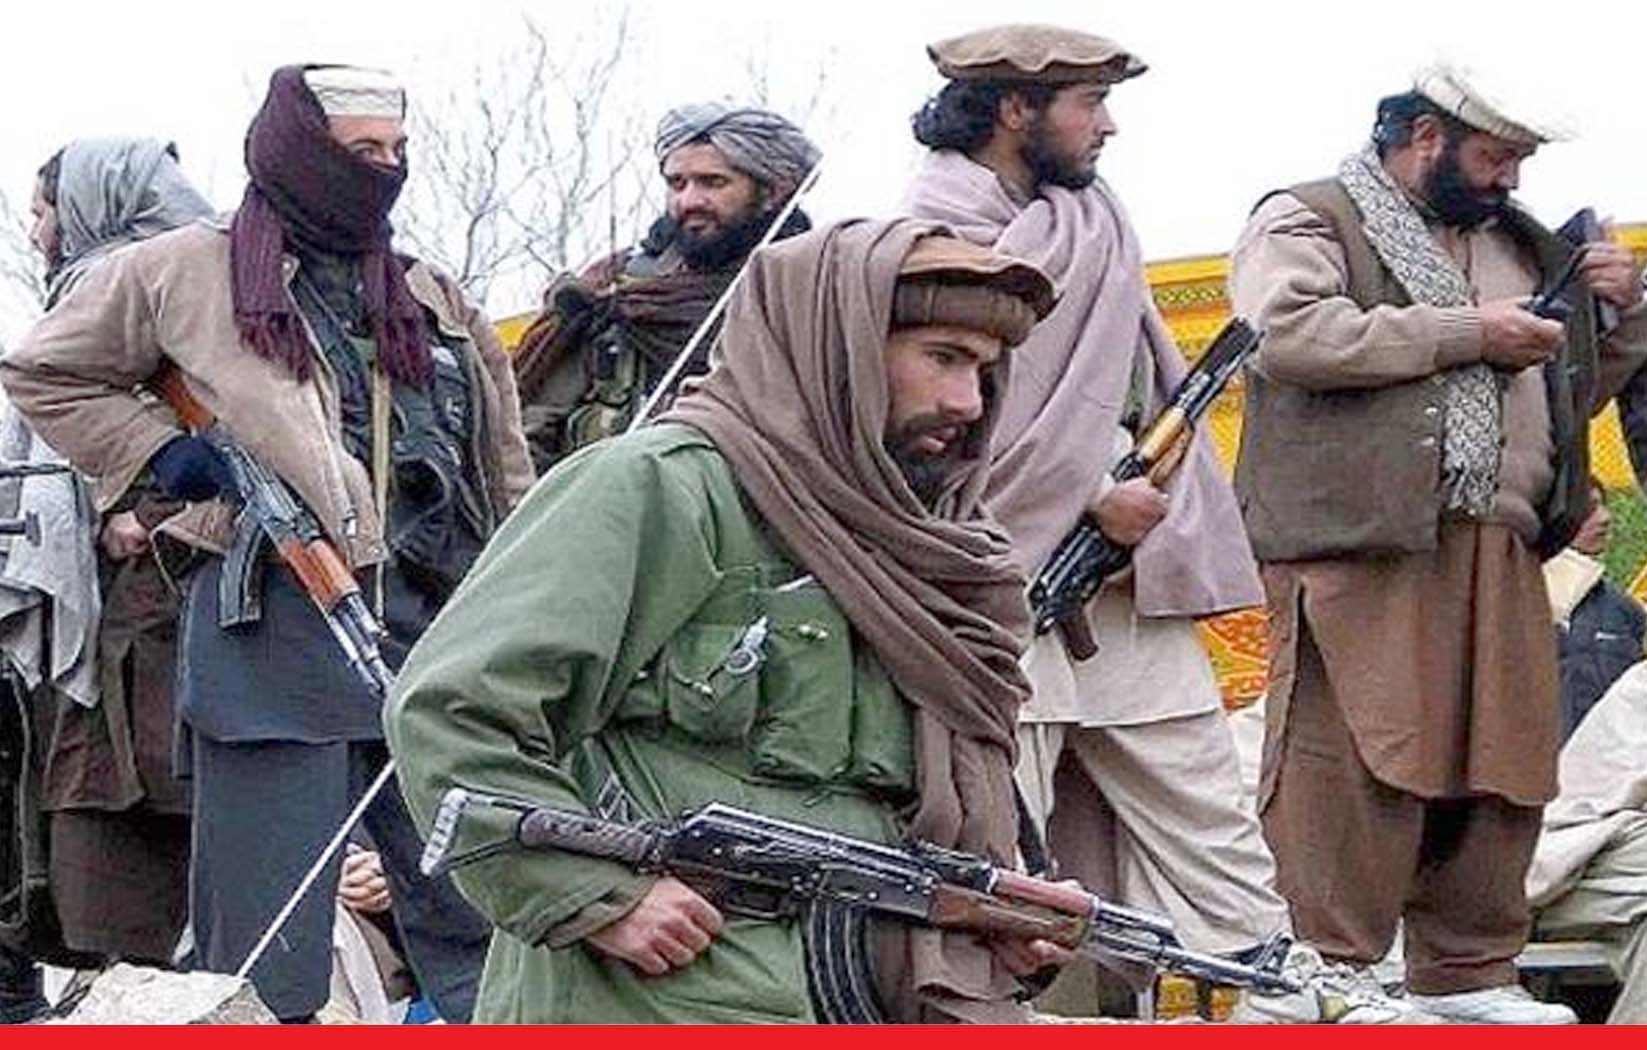 तालिबान को काबू में रखने के लिए नई साजिश में जुटा पाकिस्तान 